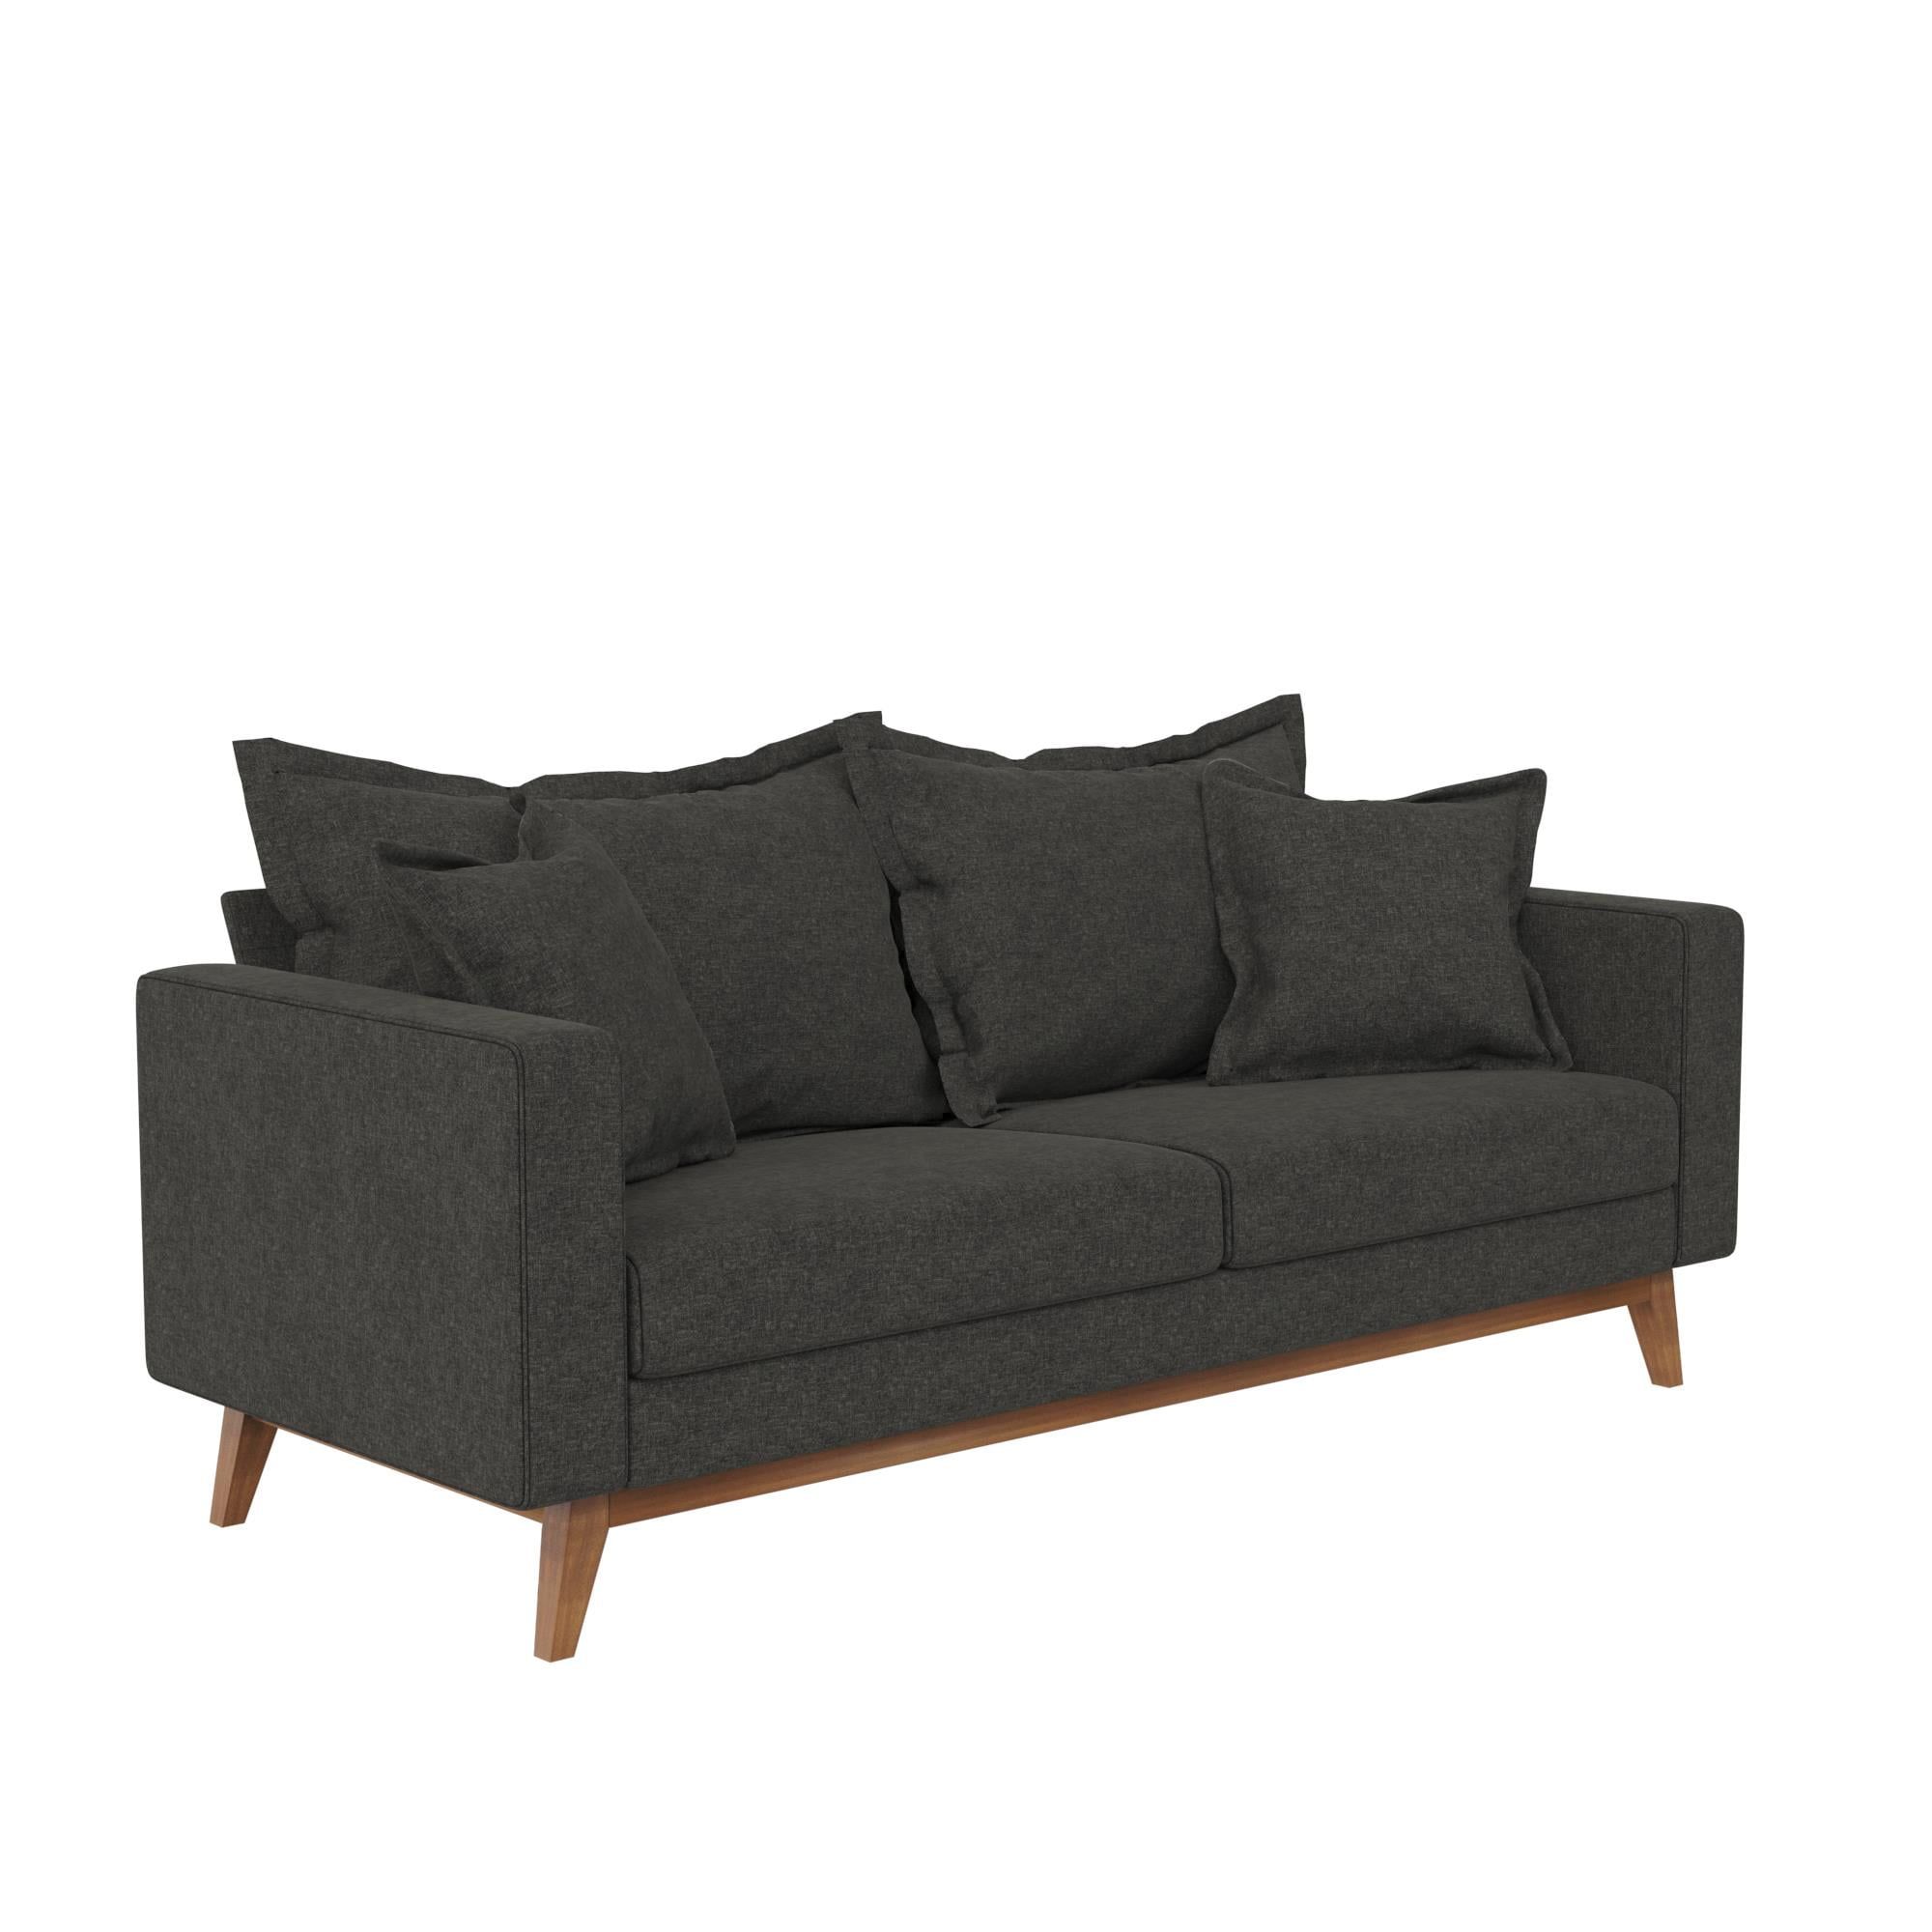 Dhp Miriam Pillowback Wood Base Sofa, Gray Linen – Walmart With Sofas With Pillowback Wood Bases (Gallery 16 of 20)